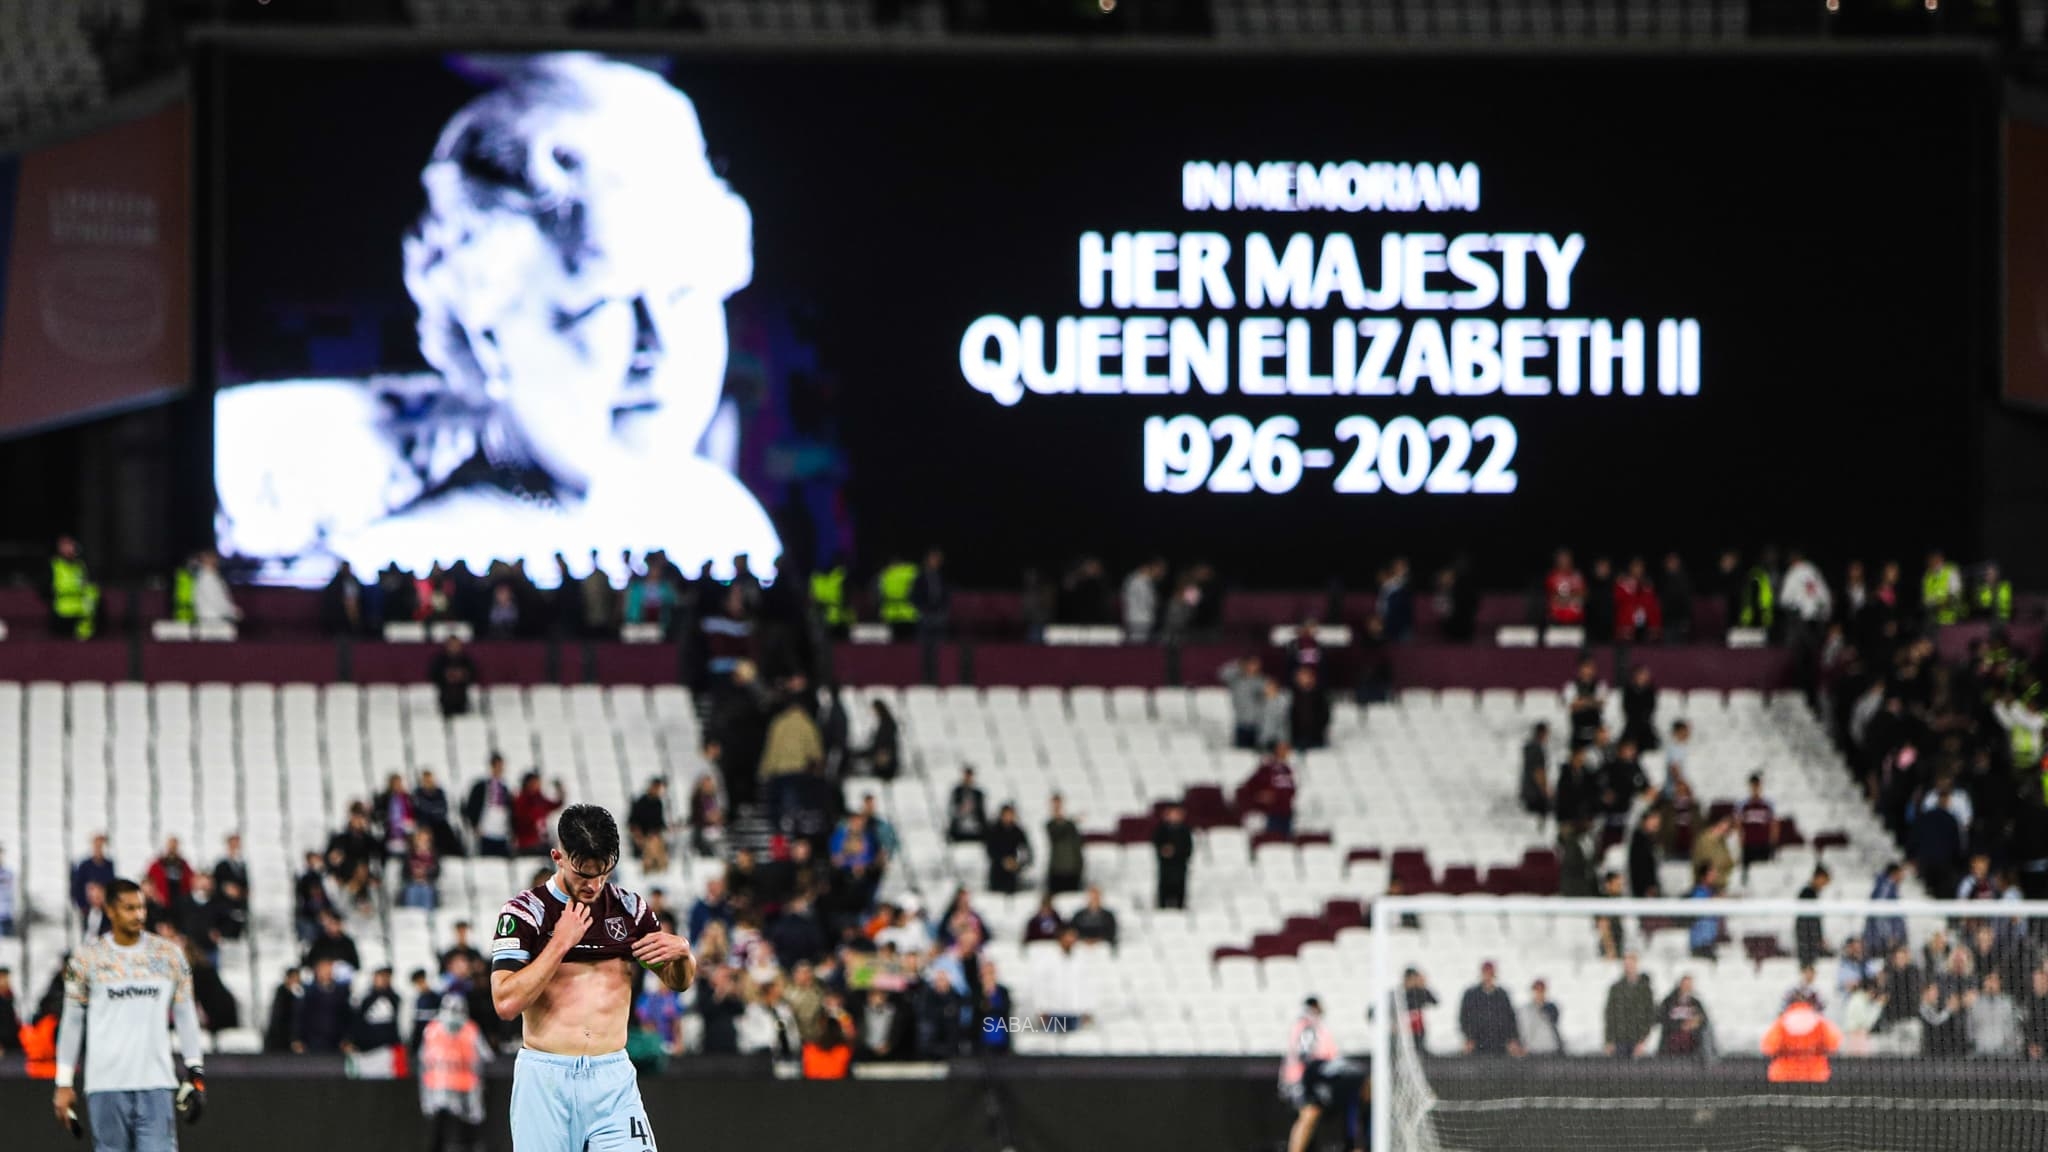 Vòng 7 Ngoại hạng Anh bị hoãn vì quốc tang nữ hoàng Elizabeth II